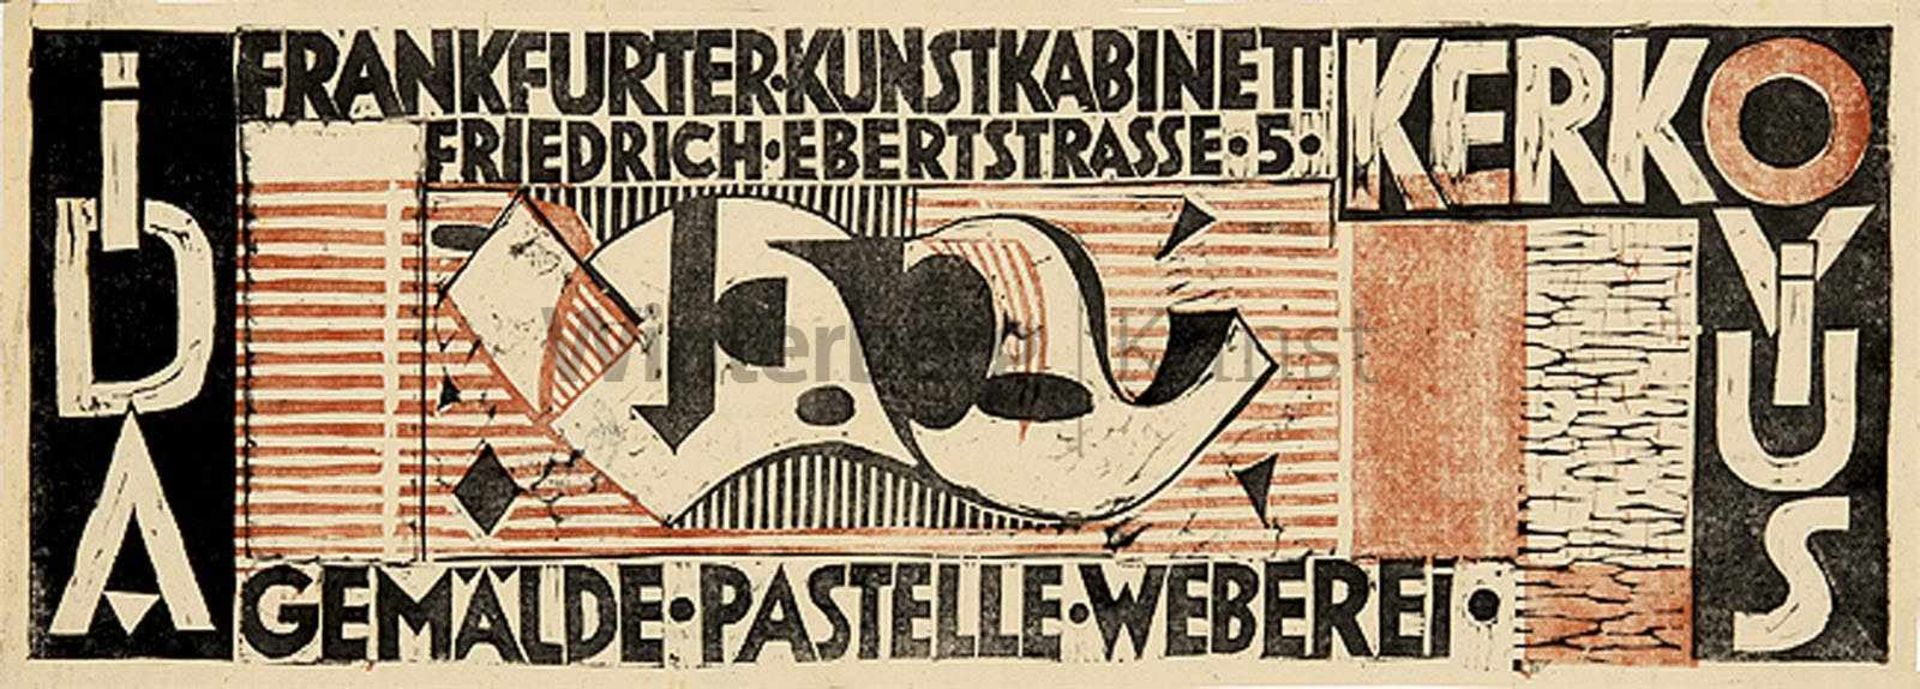 IDA KERKOVIUS Riga 1879 - 1970 StuttgartIda Kerkovius. Gemälde, Pastelle, Weberei.